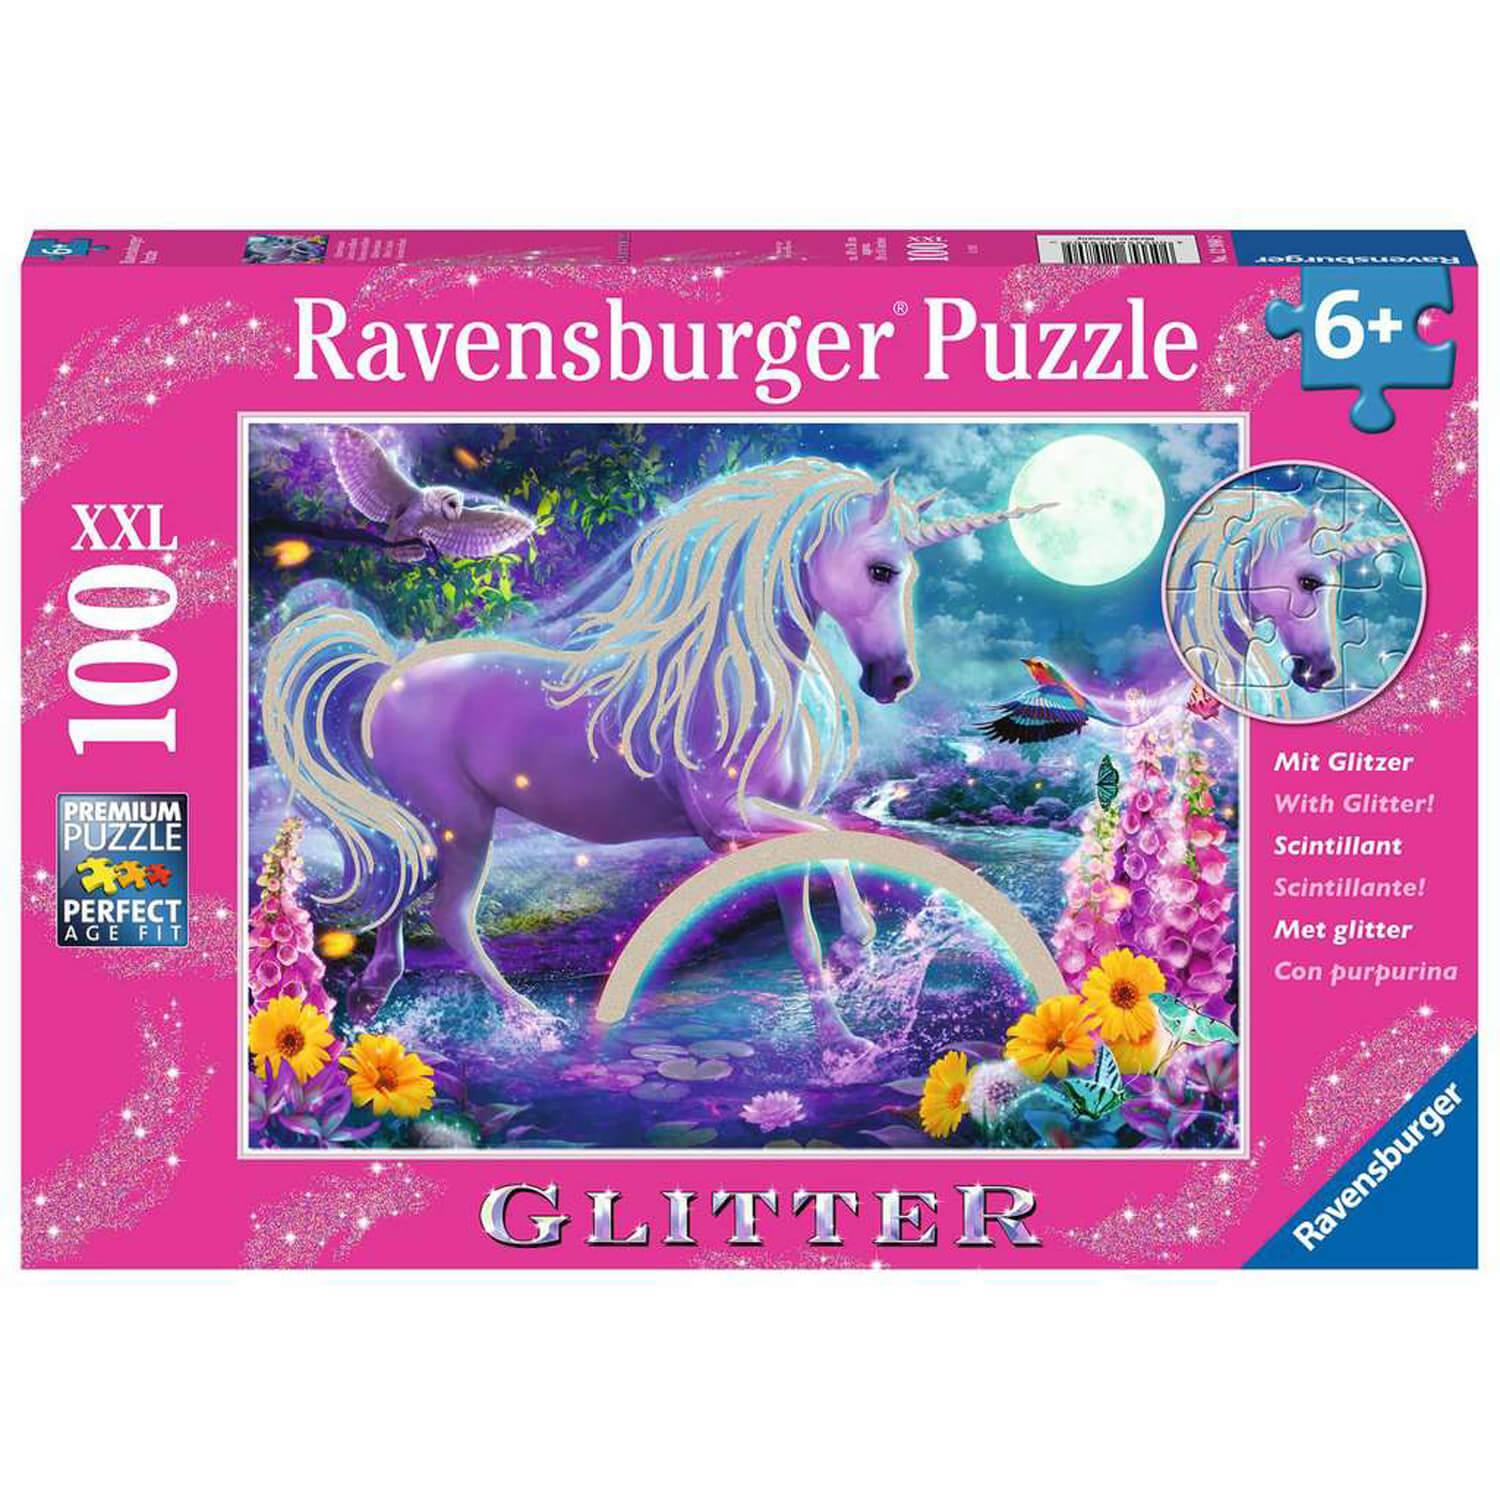 Puzzle 100 p XXL - La carte du monde - Un jeu Ravensburger - Boutique